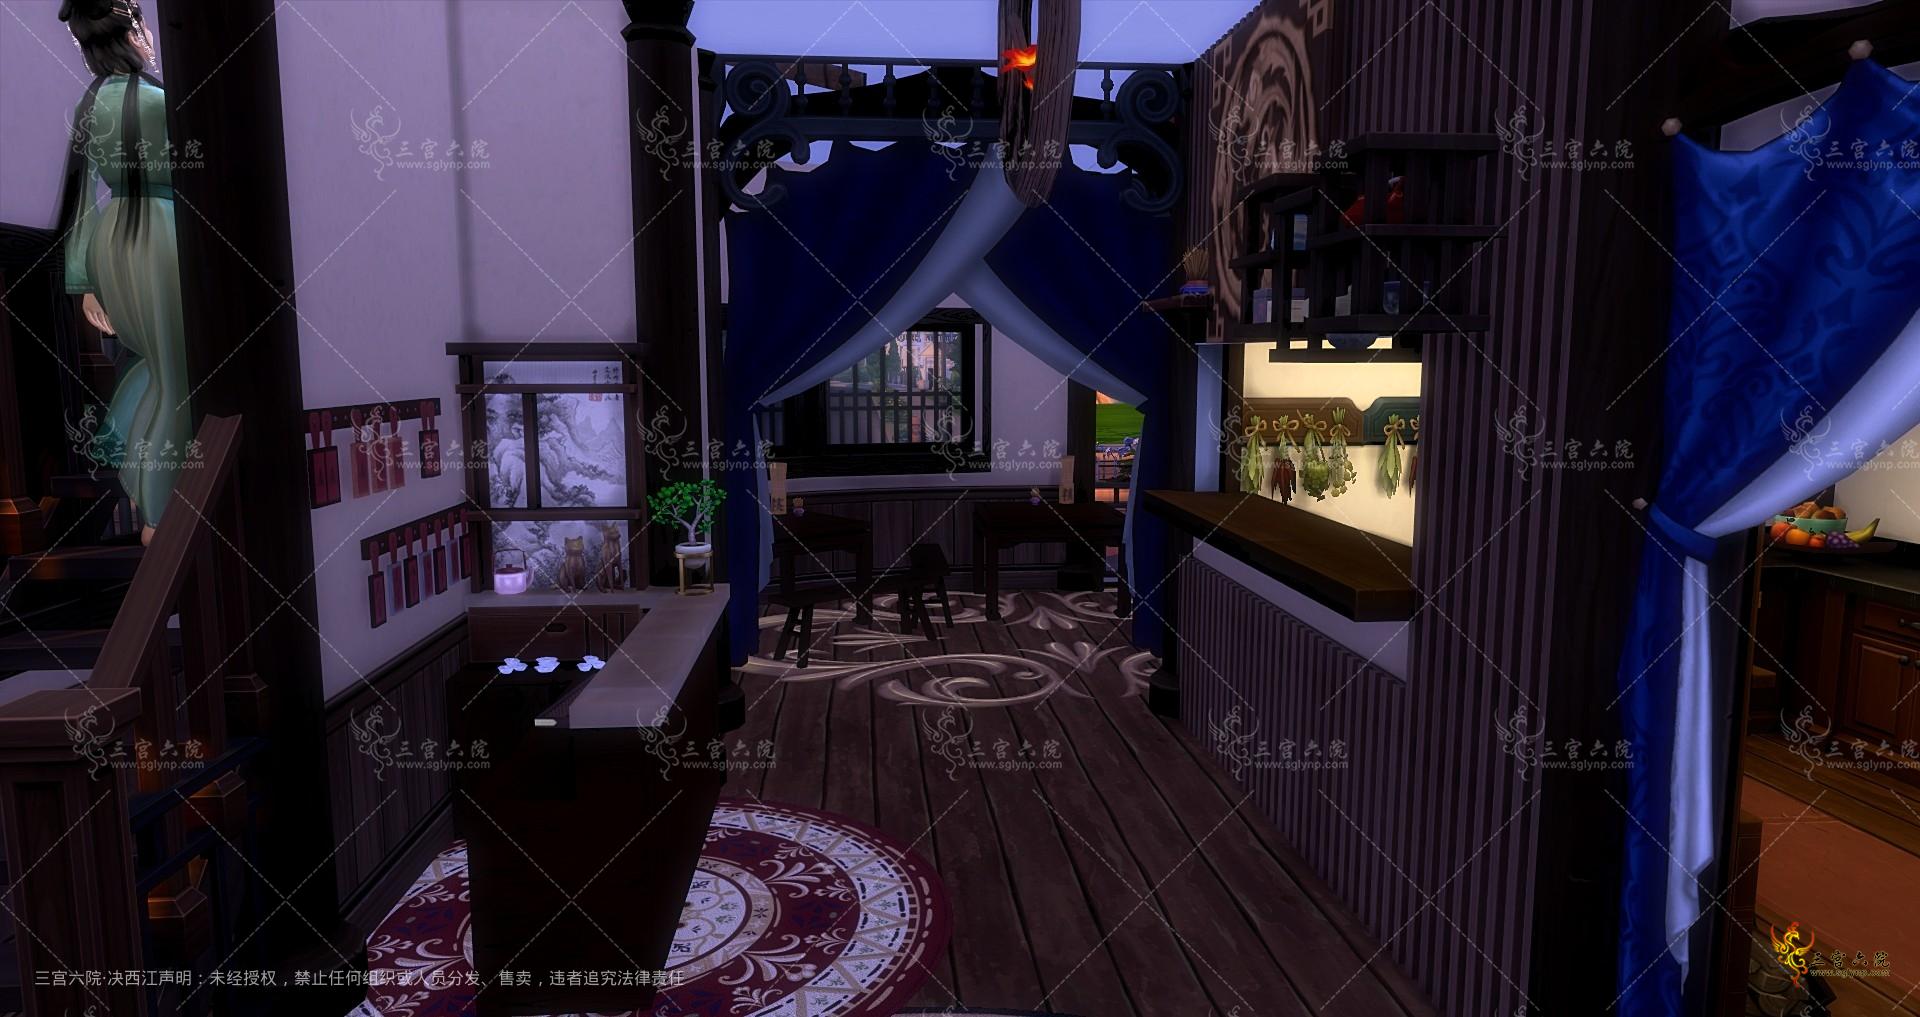 Sims 4 Screenshot 2023.02.25 - 18.50.57.44.png